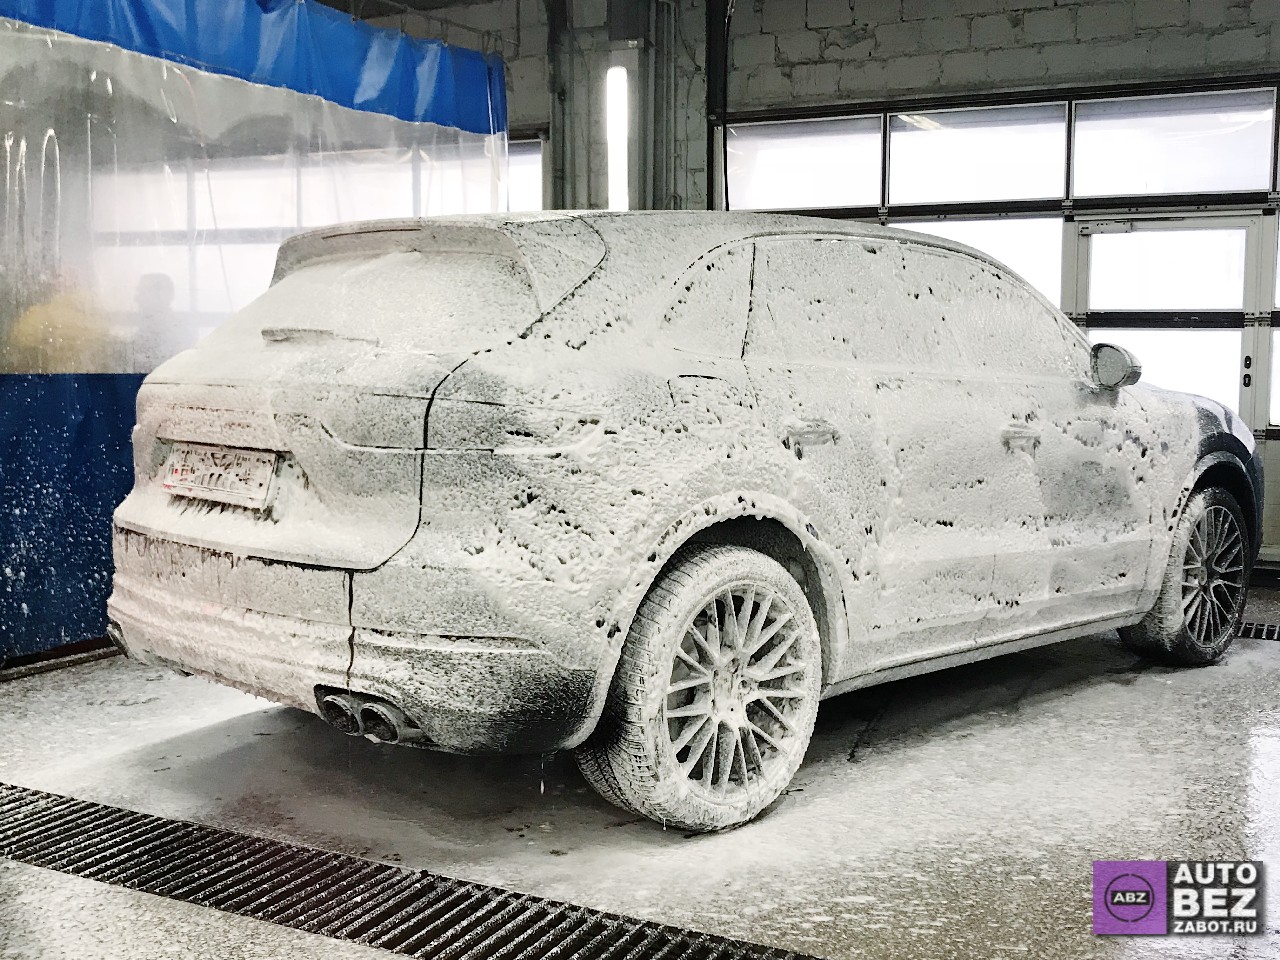 Фото Как правильно мыть автомобиль, защищенный полиуретаном?